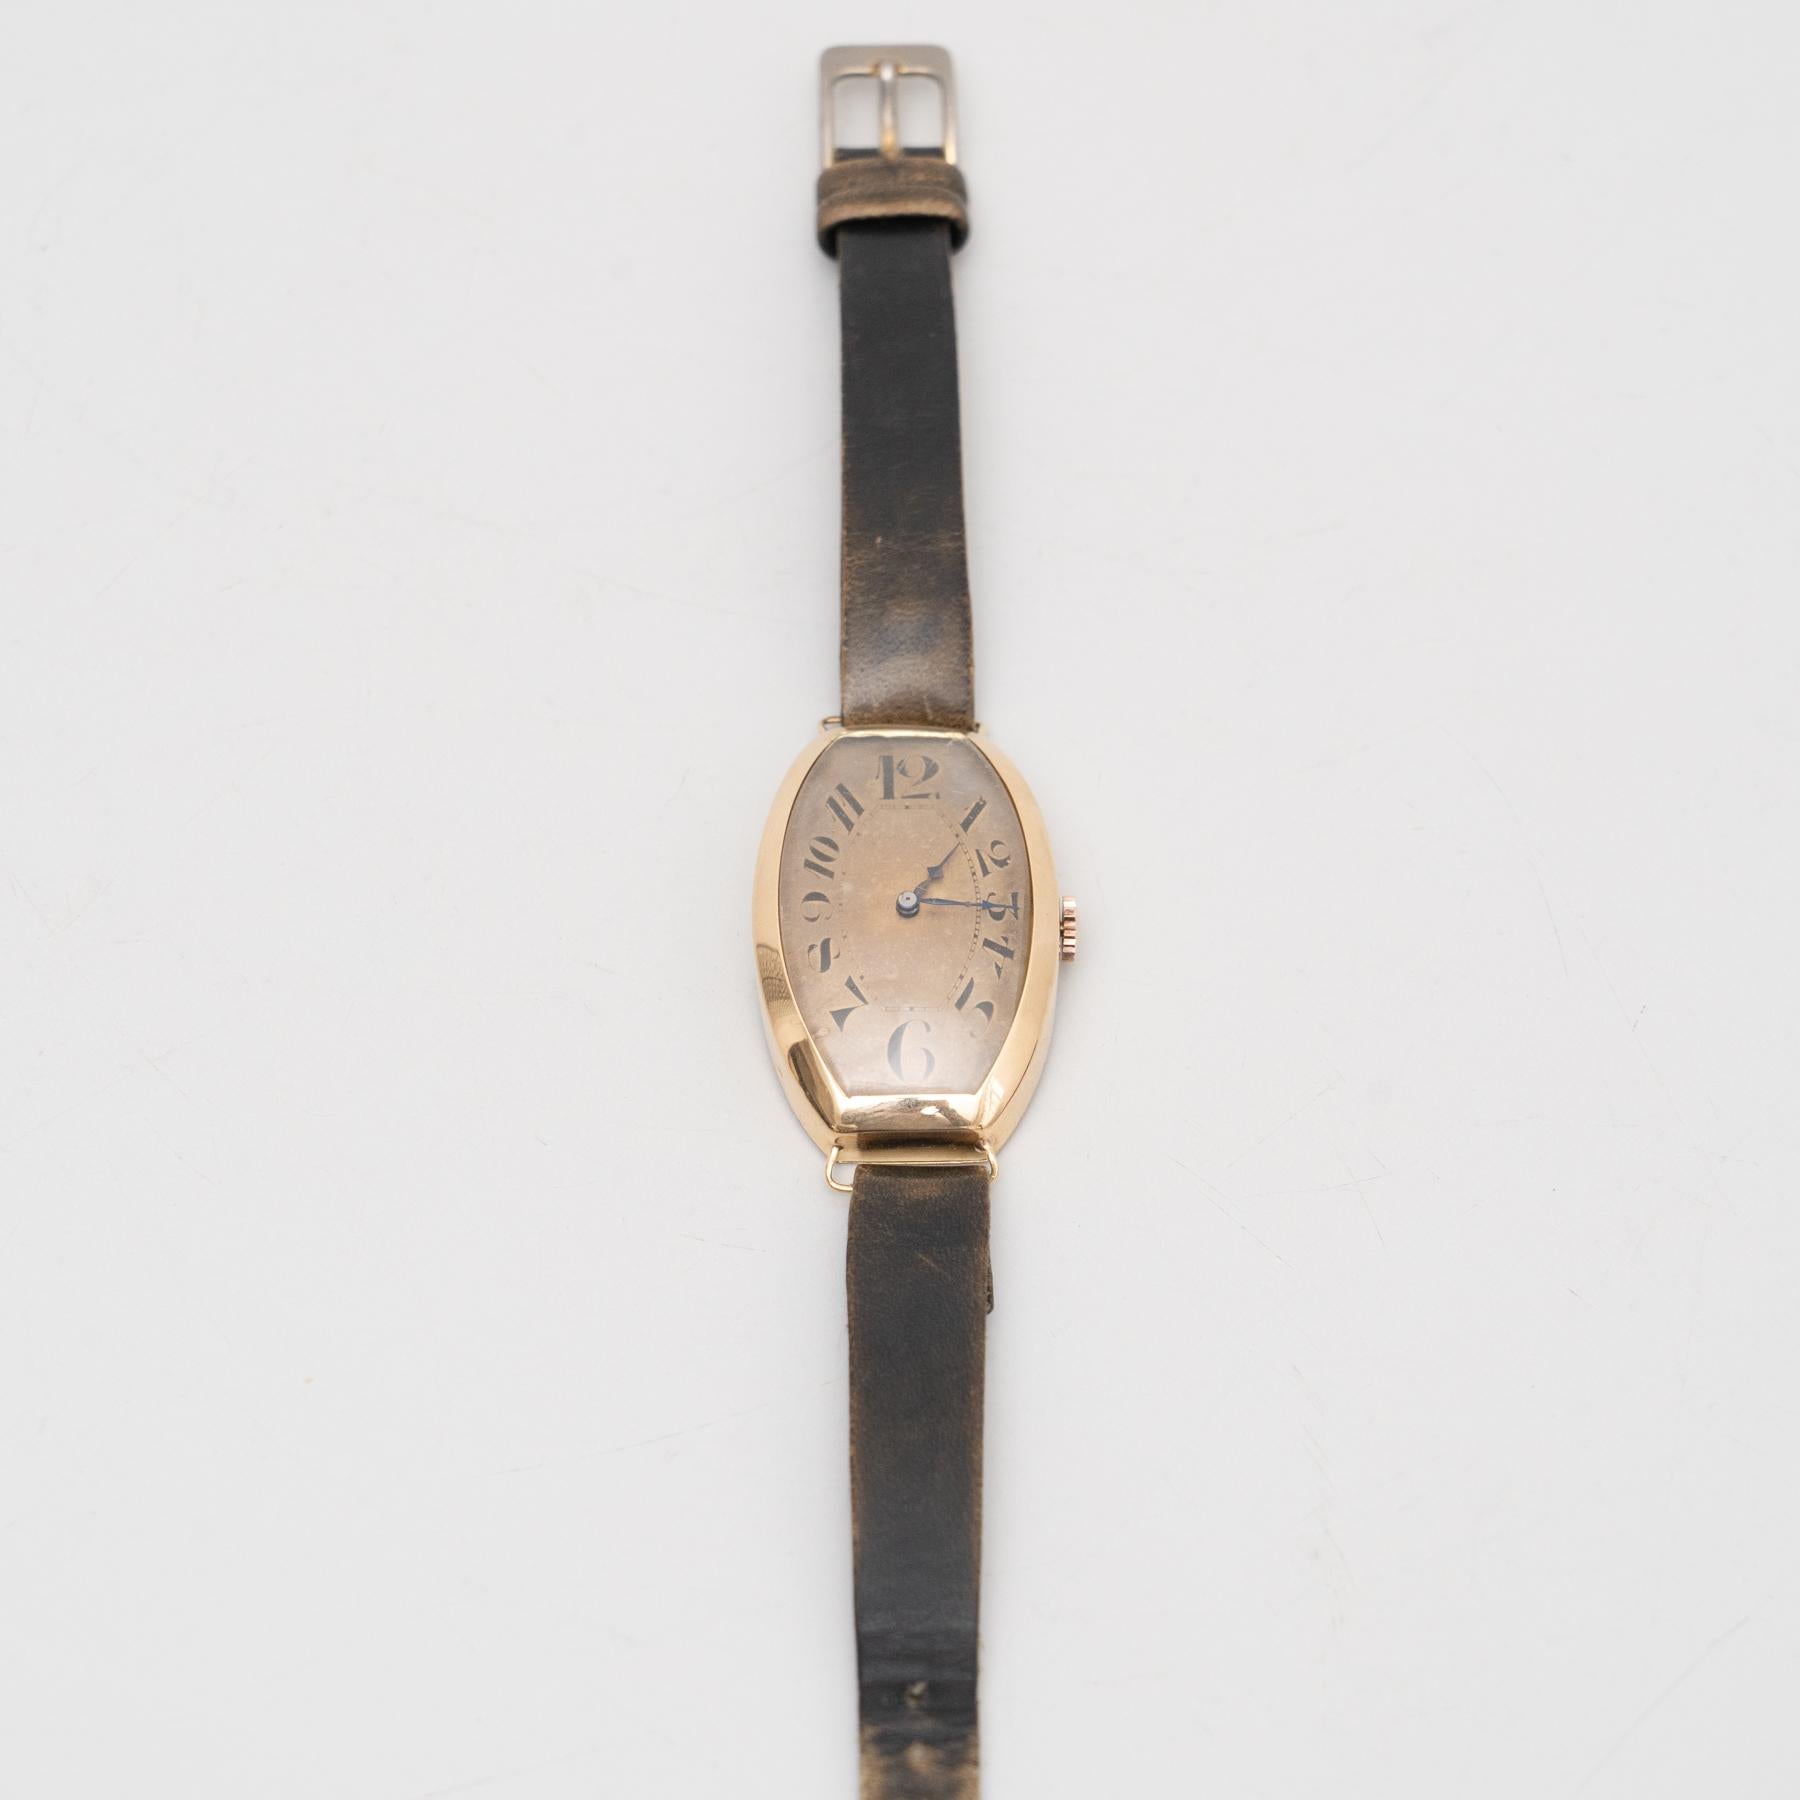 Montre-bracelet vintage traditionnelle avec le bracelet en cuir d'origine.

Remontez le temps avec cette exquise montre-bracelet traditionnelle des années 1930. Complément idéal de toute collection de montres ou pièce d'apparat à porter, cette